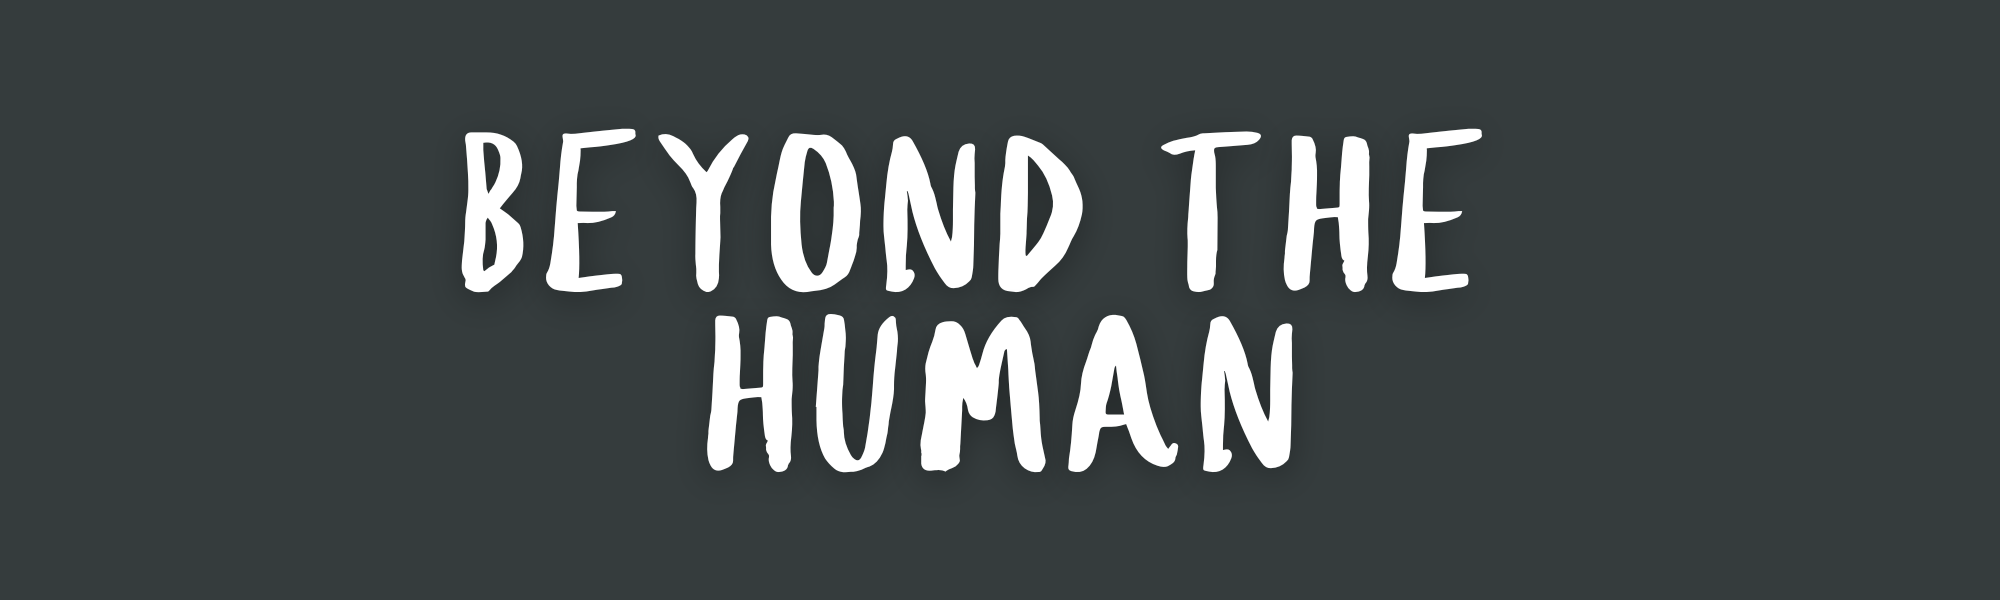 Beyond the Human